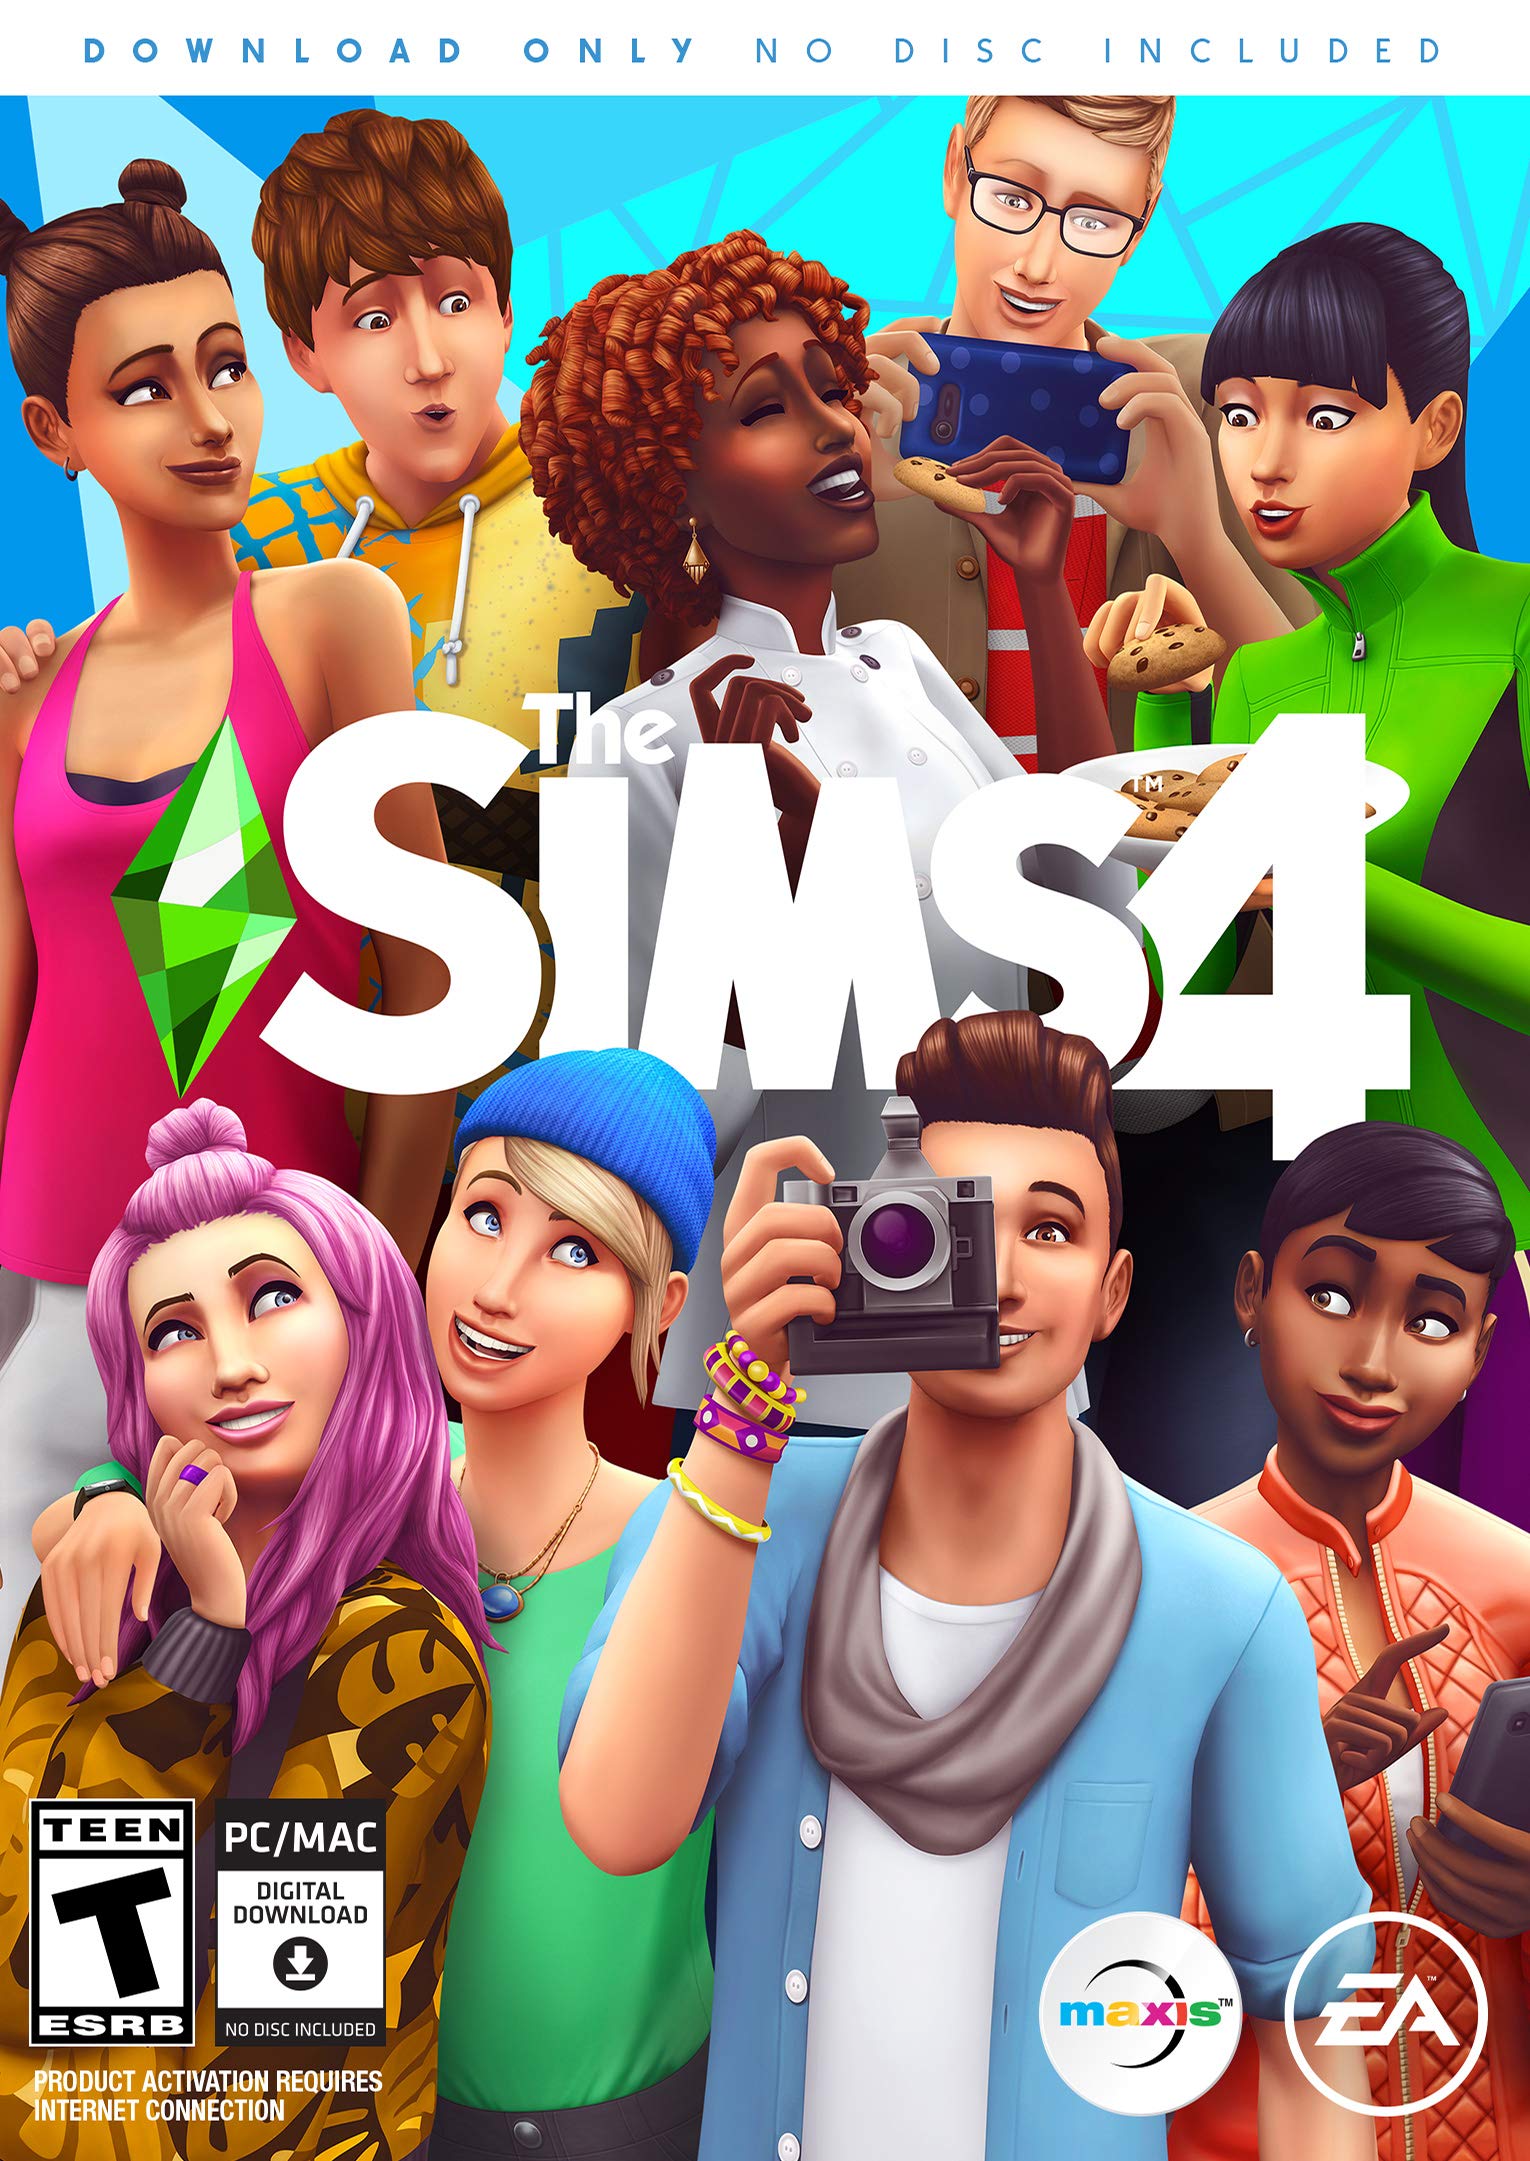 The Sims 4 [PC/Mac]